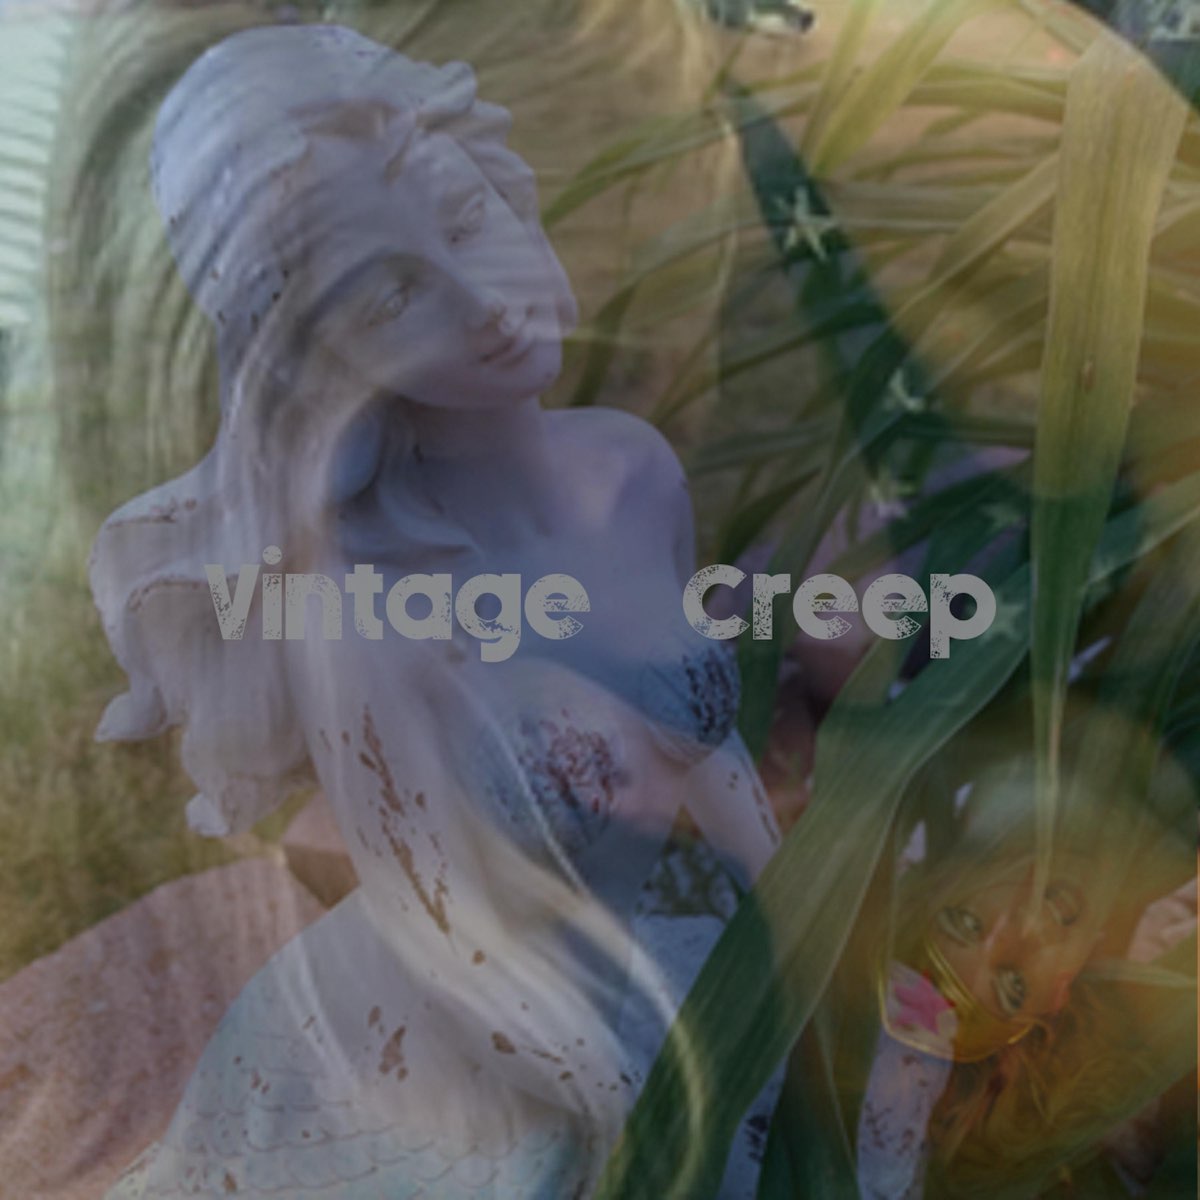 Creep Vintage